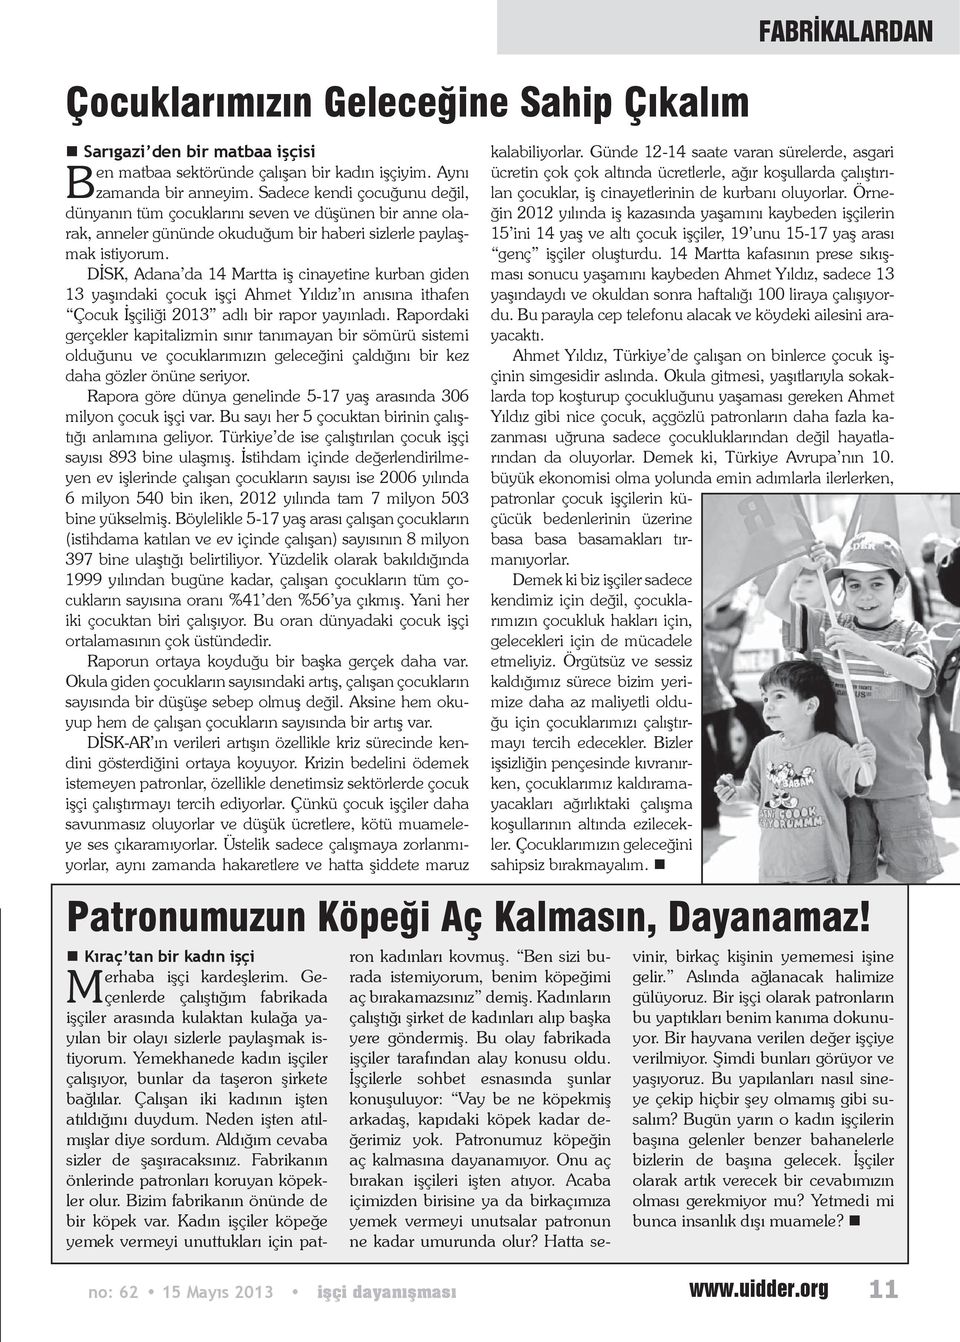 DİSK, Adana da 14 Martta iş cinayetine kurban giden 13 yaşındaki çocuk işçi Ahmet Yıldız ın anısına ithafen Çocuk İşçiliği 2013 adlı bir rapor yayınladı.